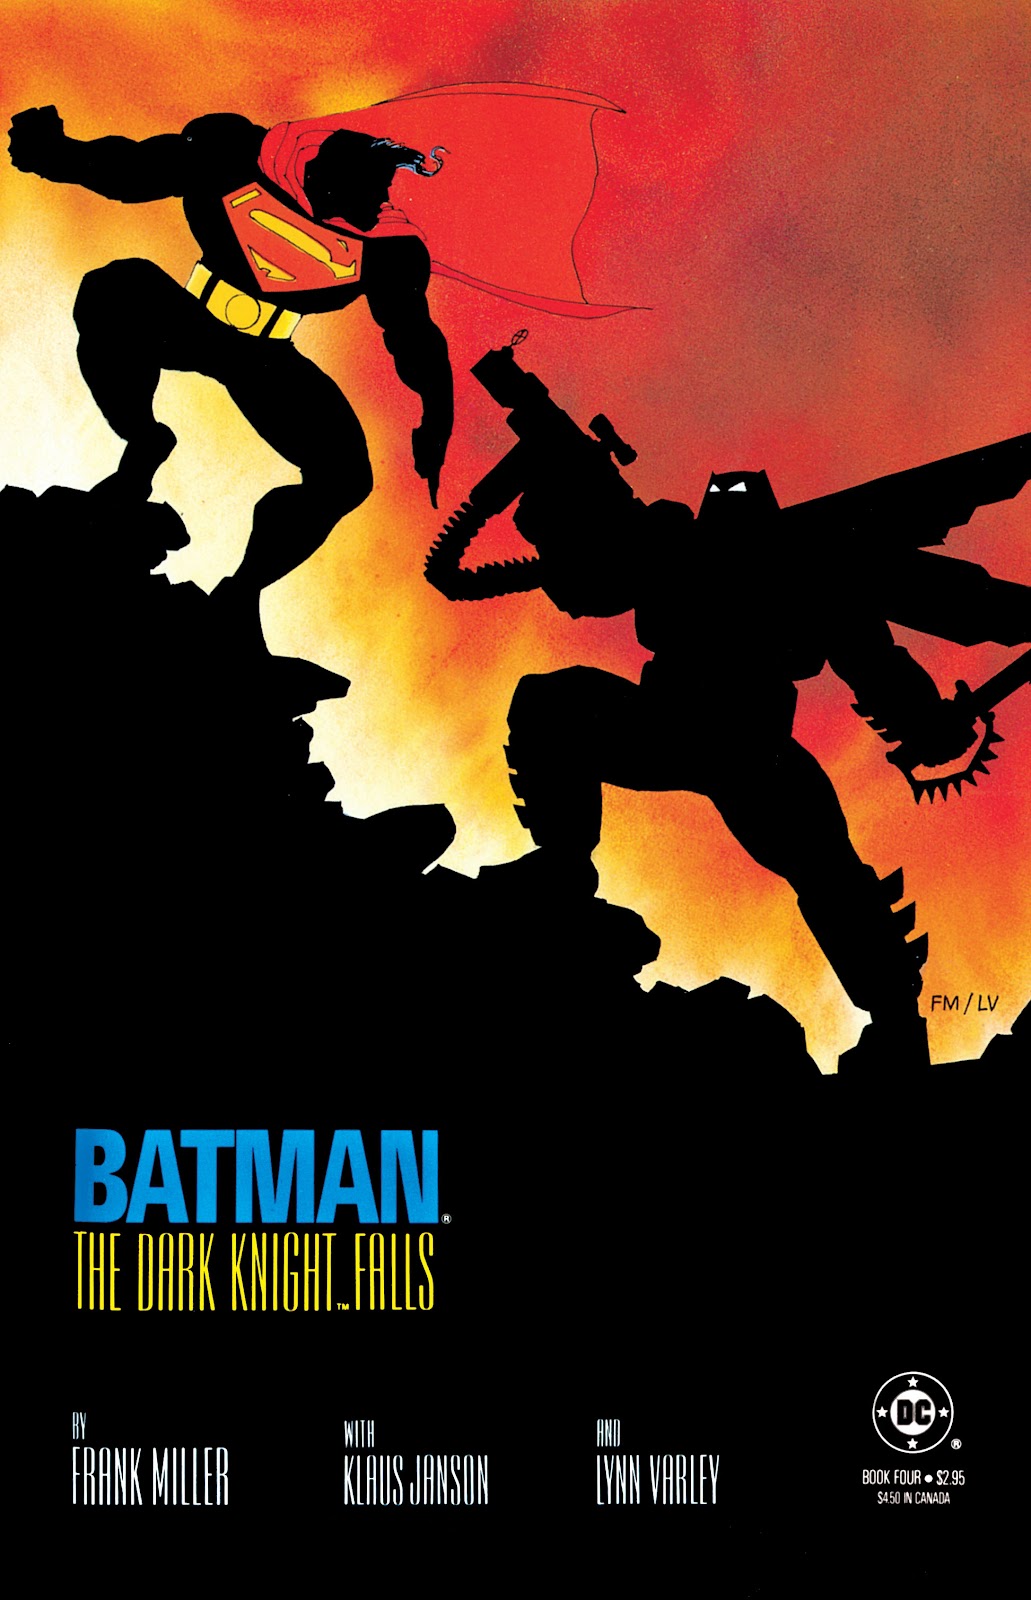 Portada de Batman: The Dark Knight #4, parte de la novela gráfica The Dark Knight Returns escrita por Frank Miller en donde vemos a Superman y Batman peleando. 